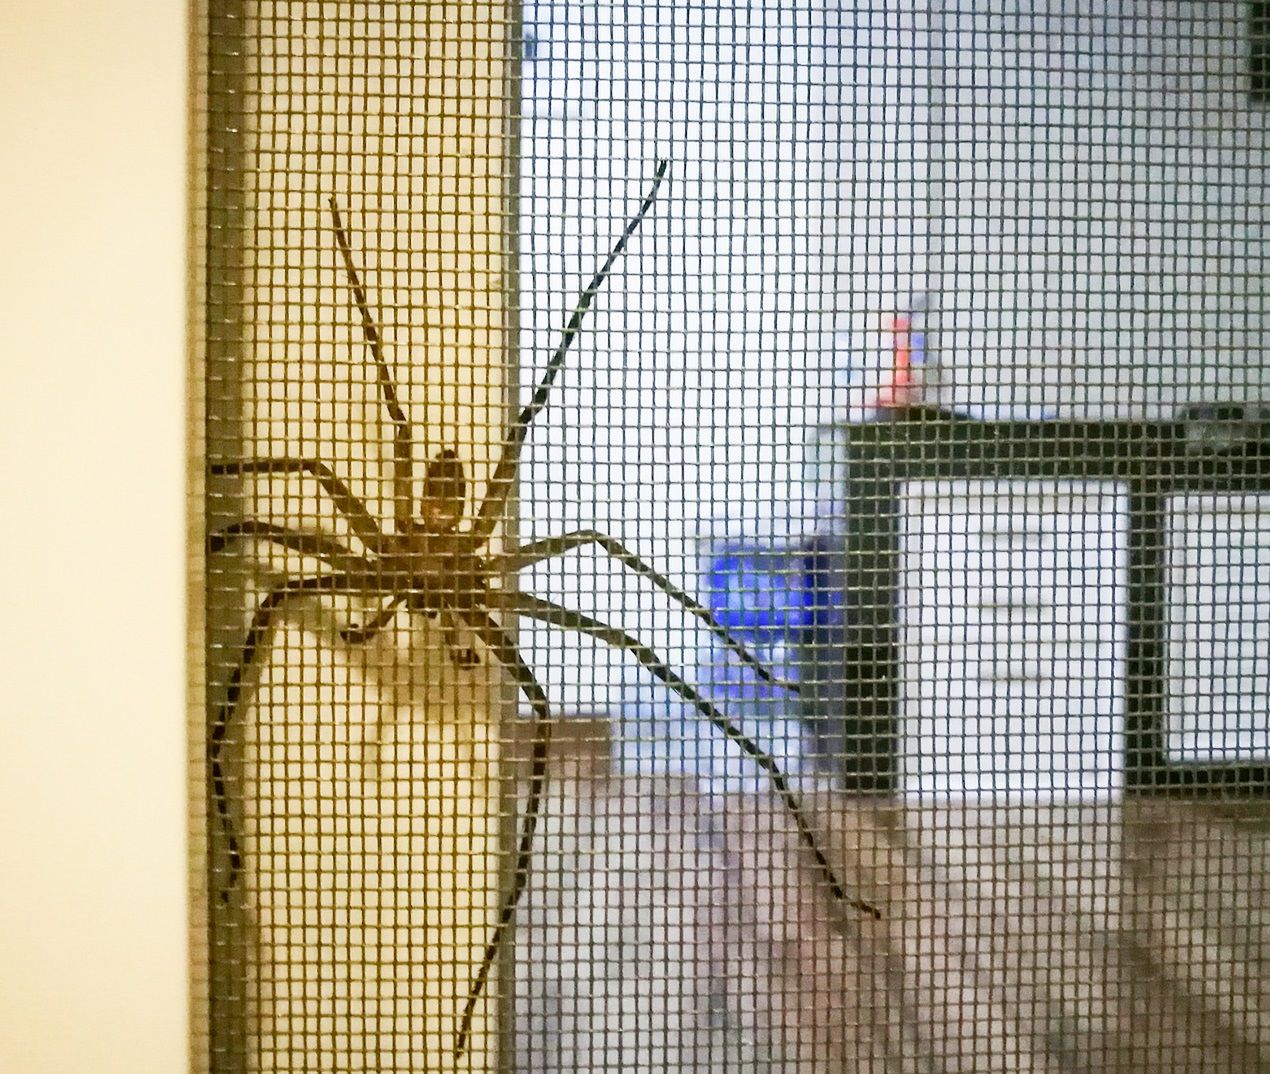 Sezon na pająki w domach rozpoczęty. Oto sposoby na pozbycie się nieproszonych gości